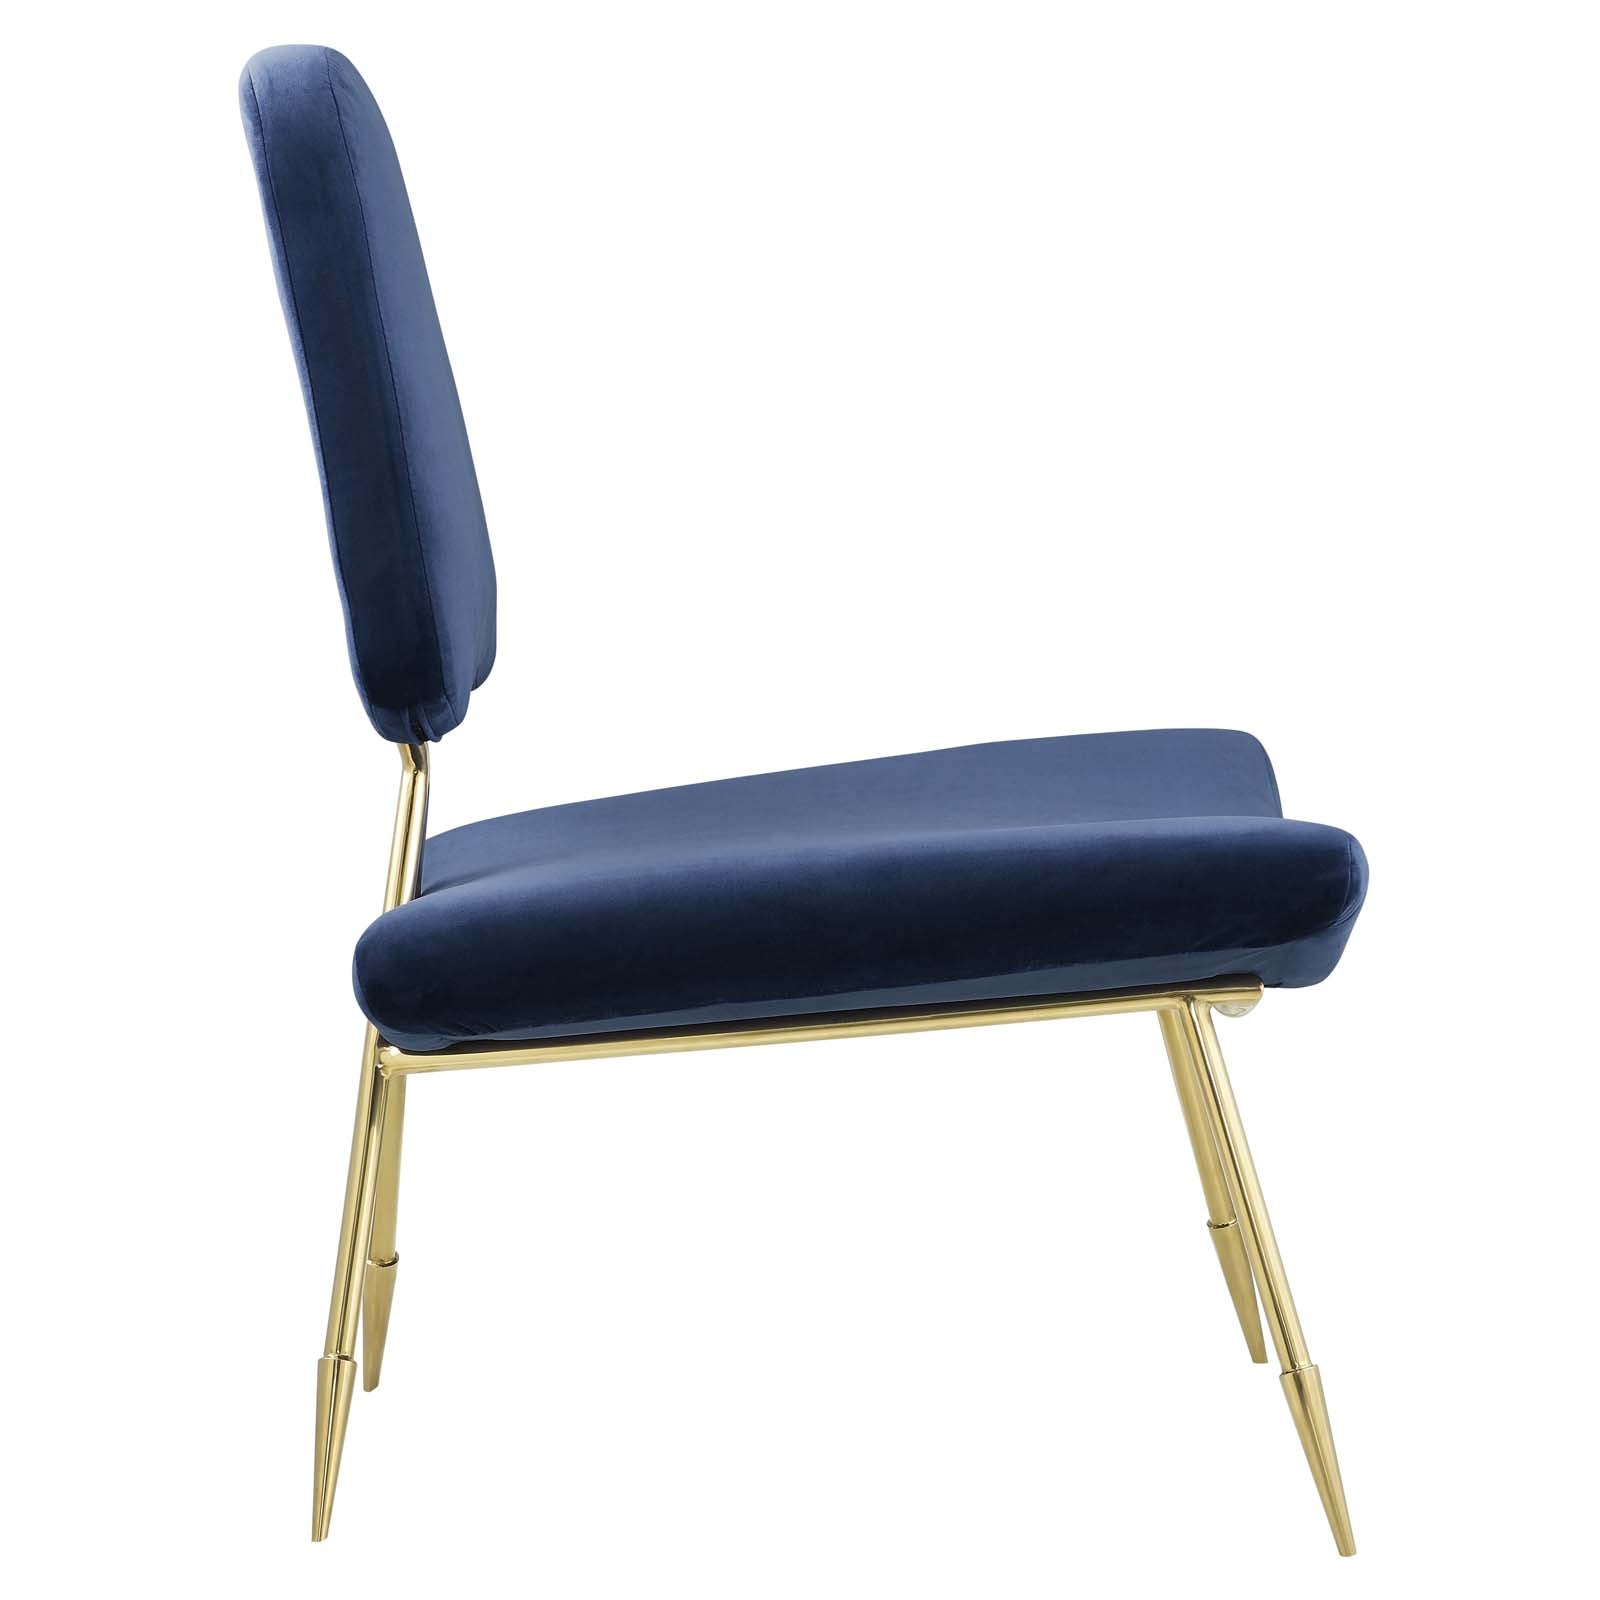 Ponder Performance Velvet Lounge Chair - East Shore Modern Home Furnishings